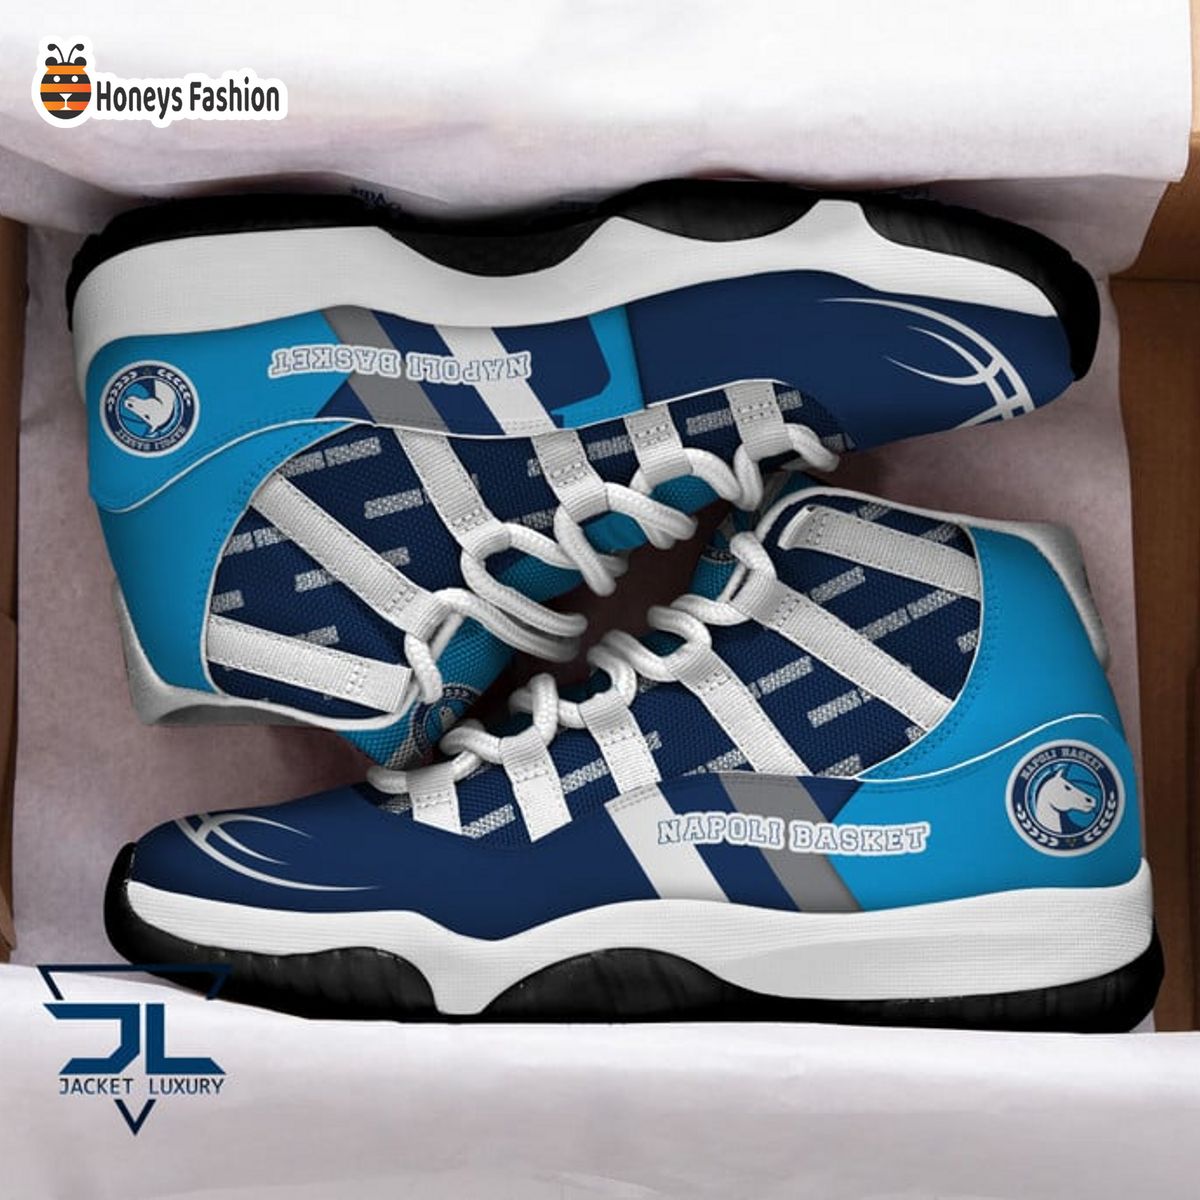 Napoli Basket Air Jordan 11 Sneaker